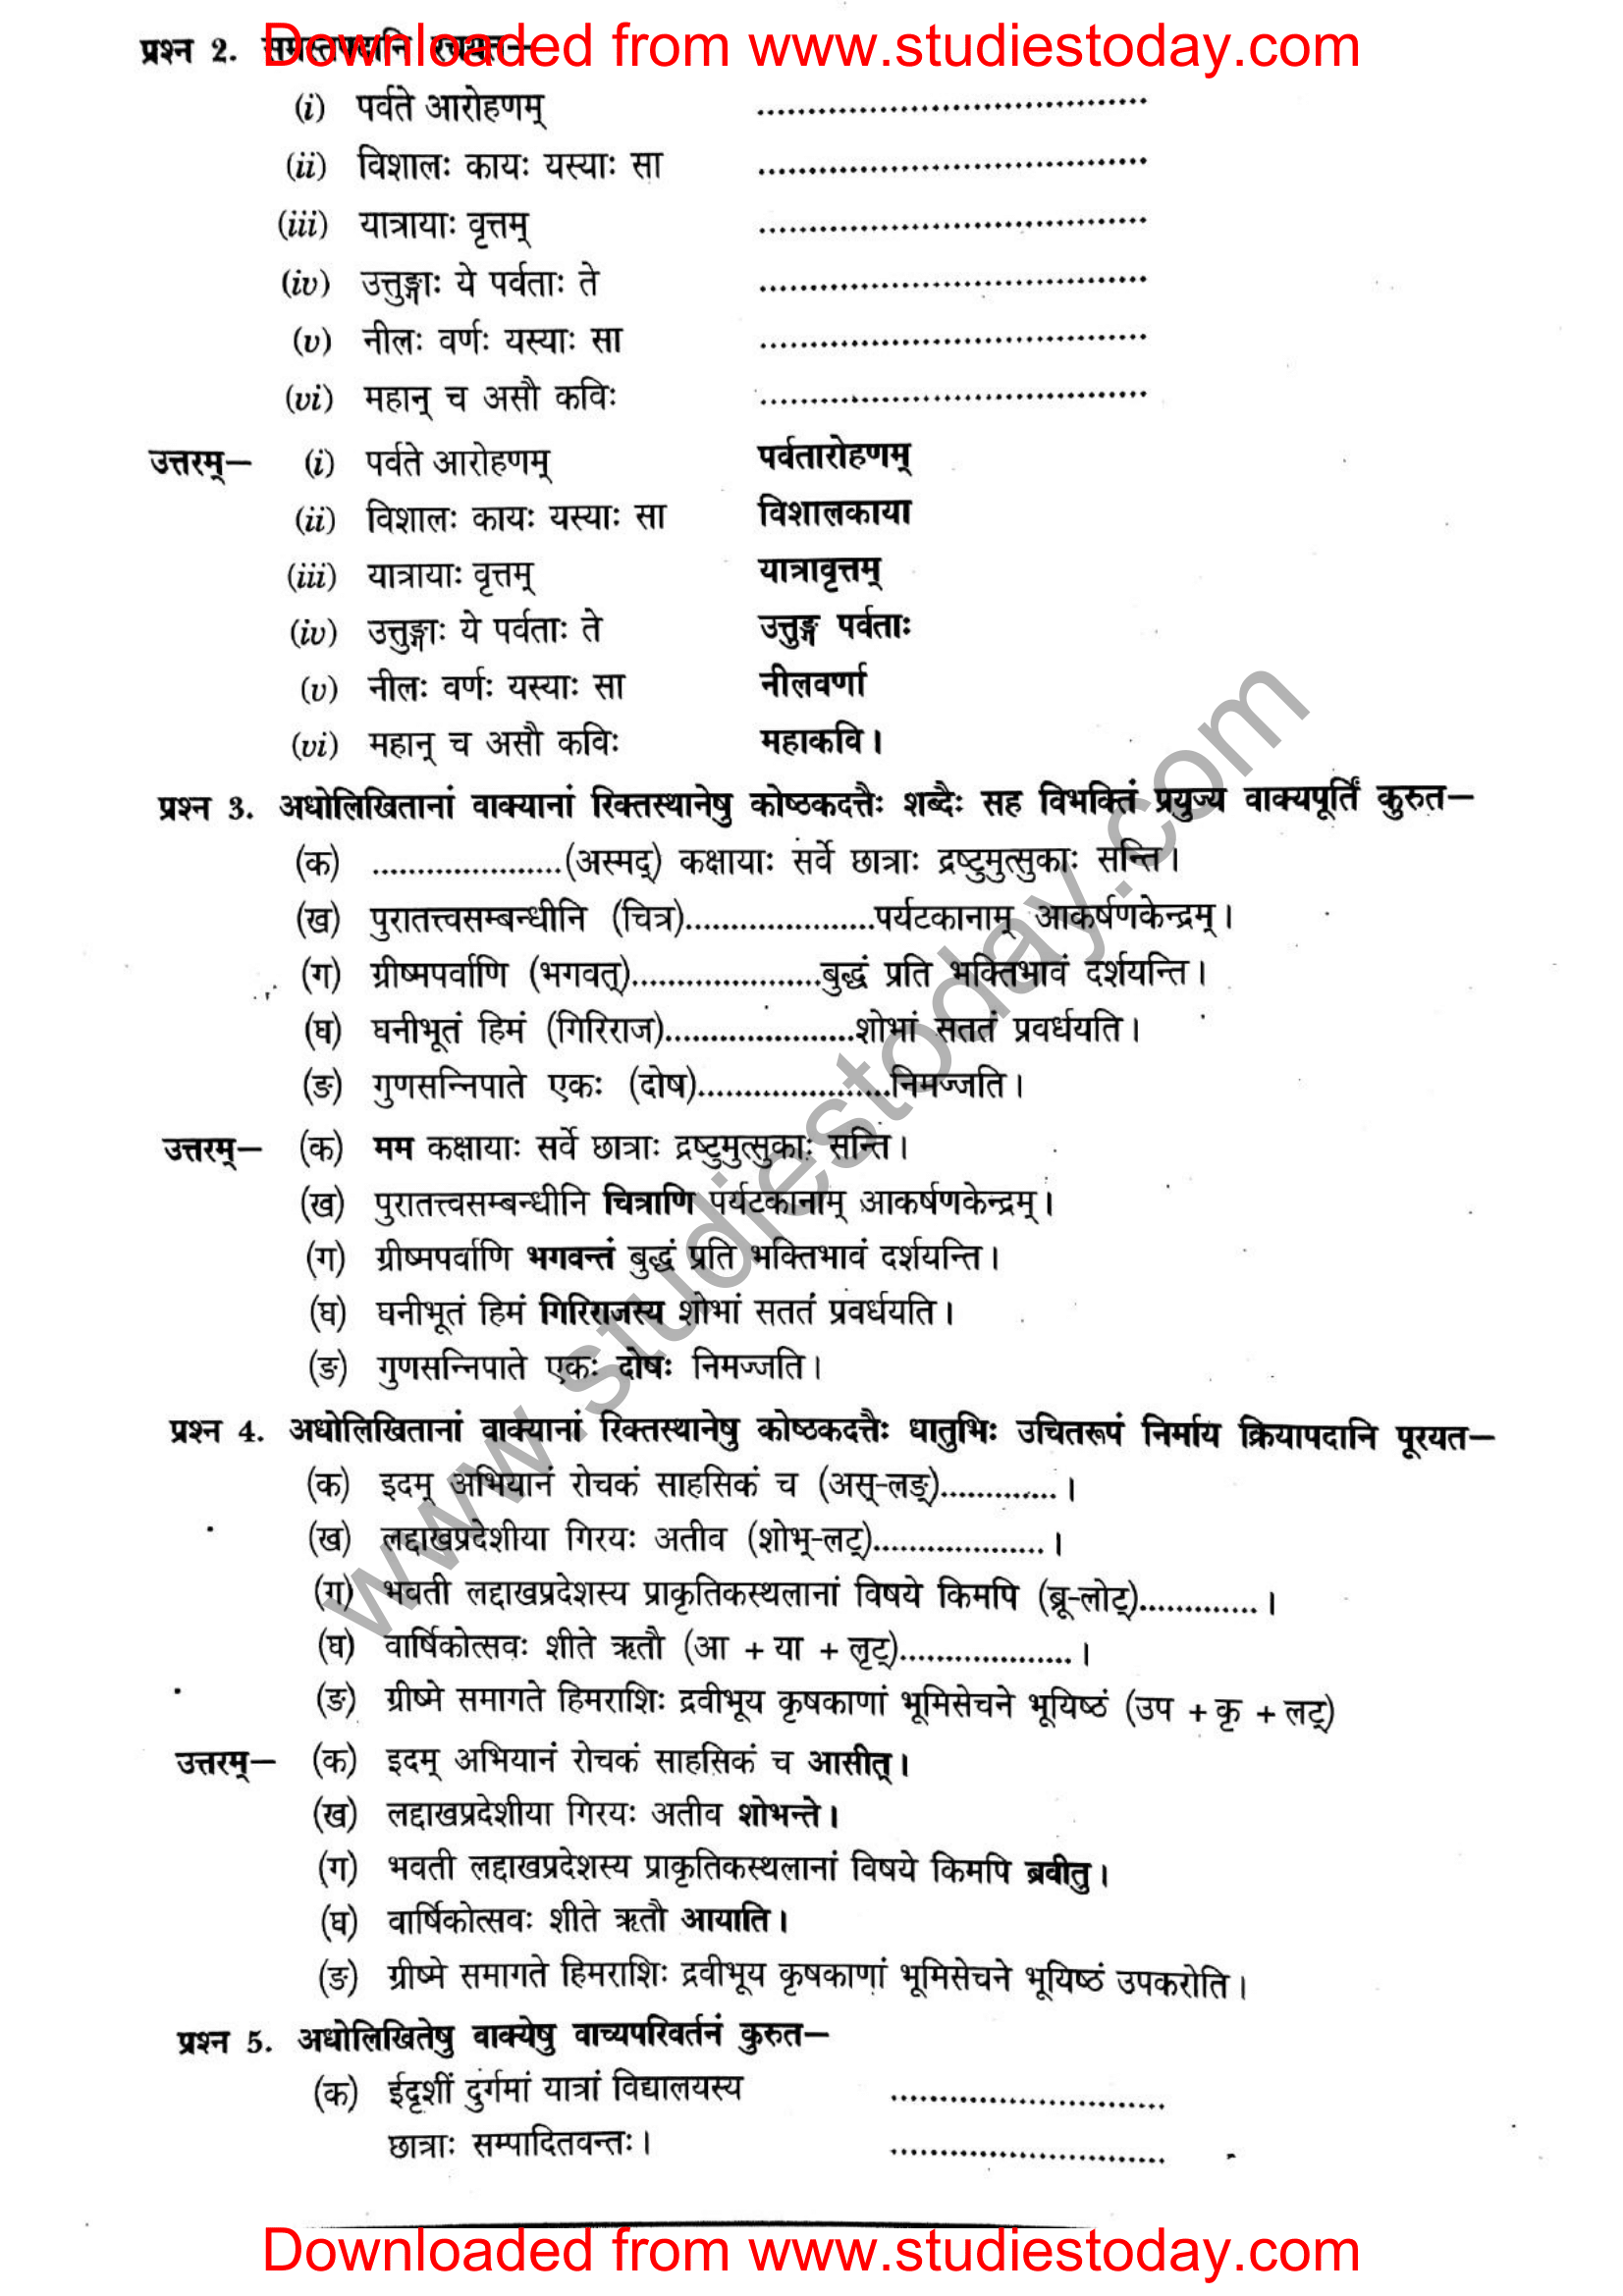 ncert-solutions-class-12-sanskrit-ritikia-chapter-5-07